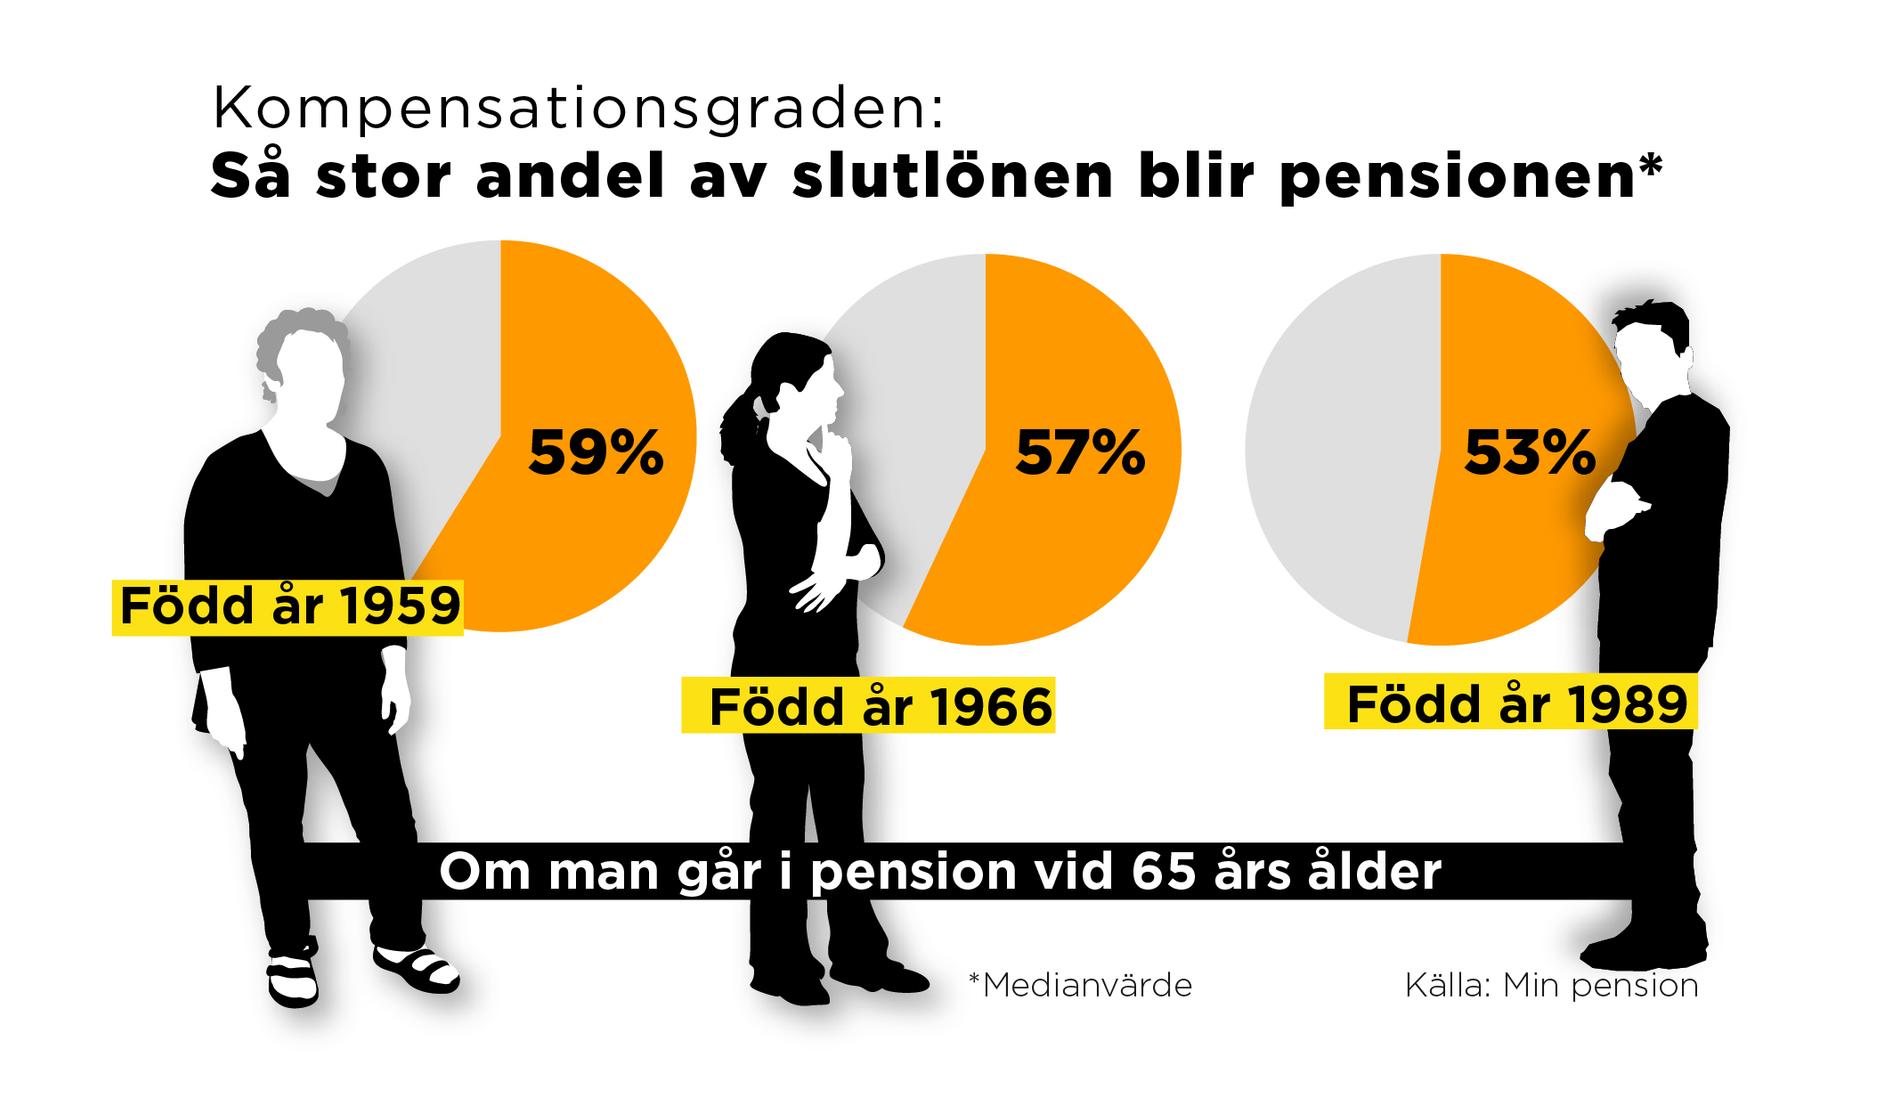 Min Pension beräknar den så kallade kompensationsgraden, som anger hur stor andel pensionen blir av slutlönen om man går i pension vid 65 års ålder.